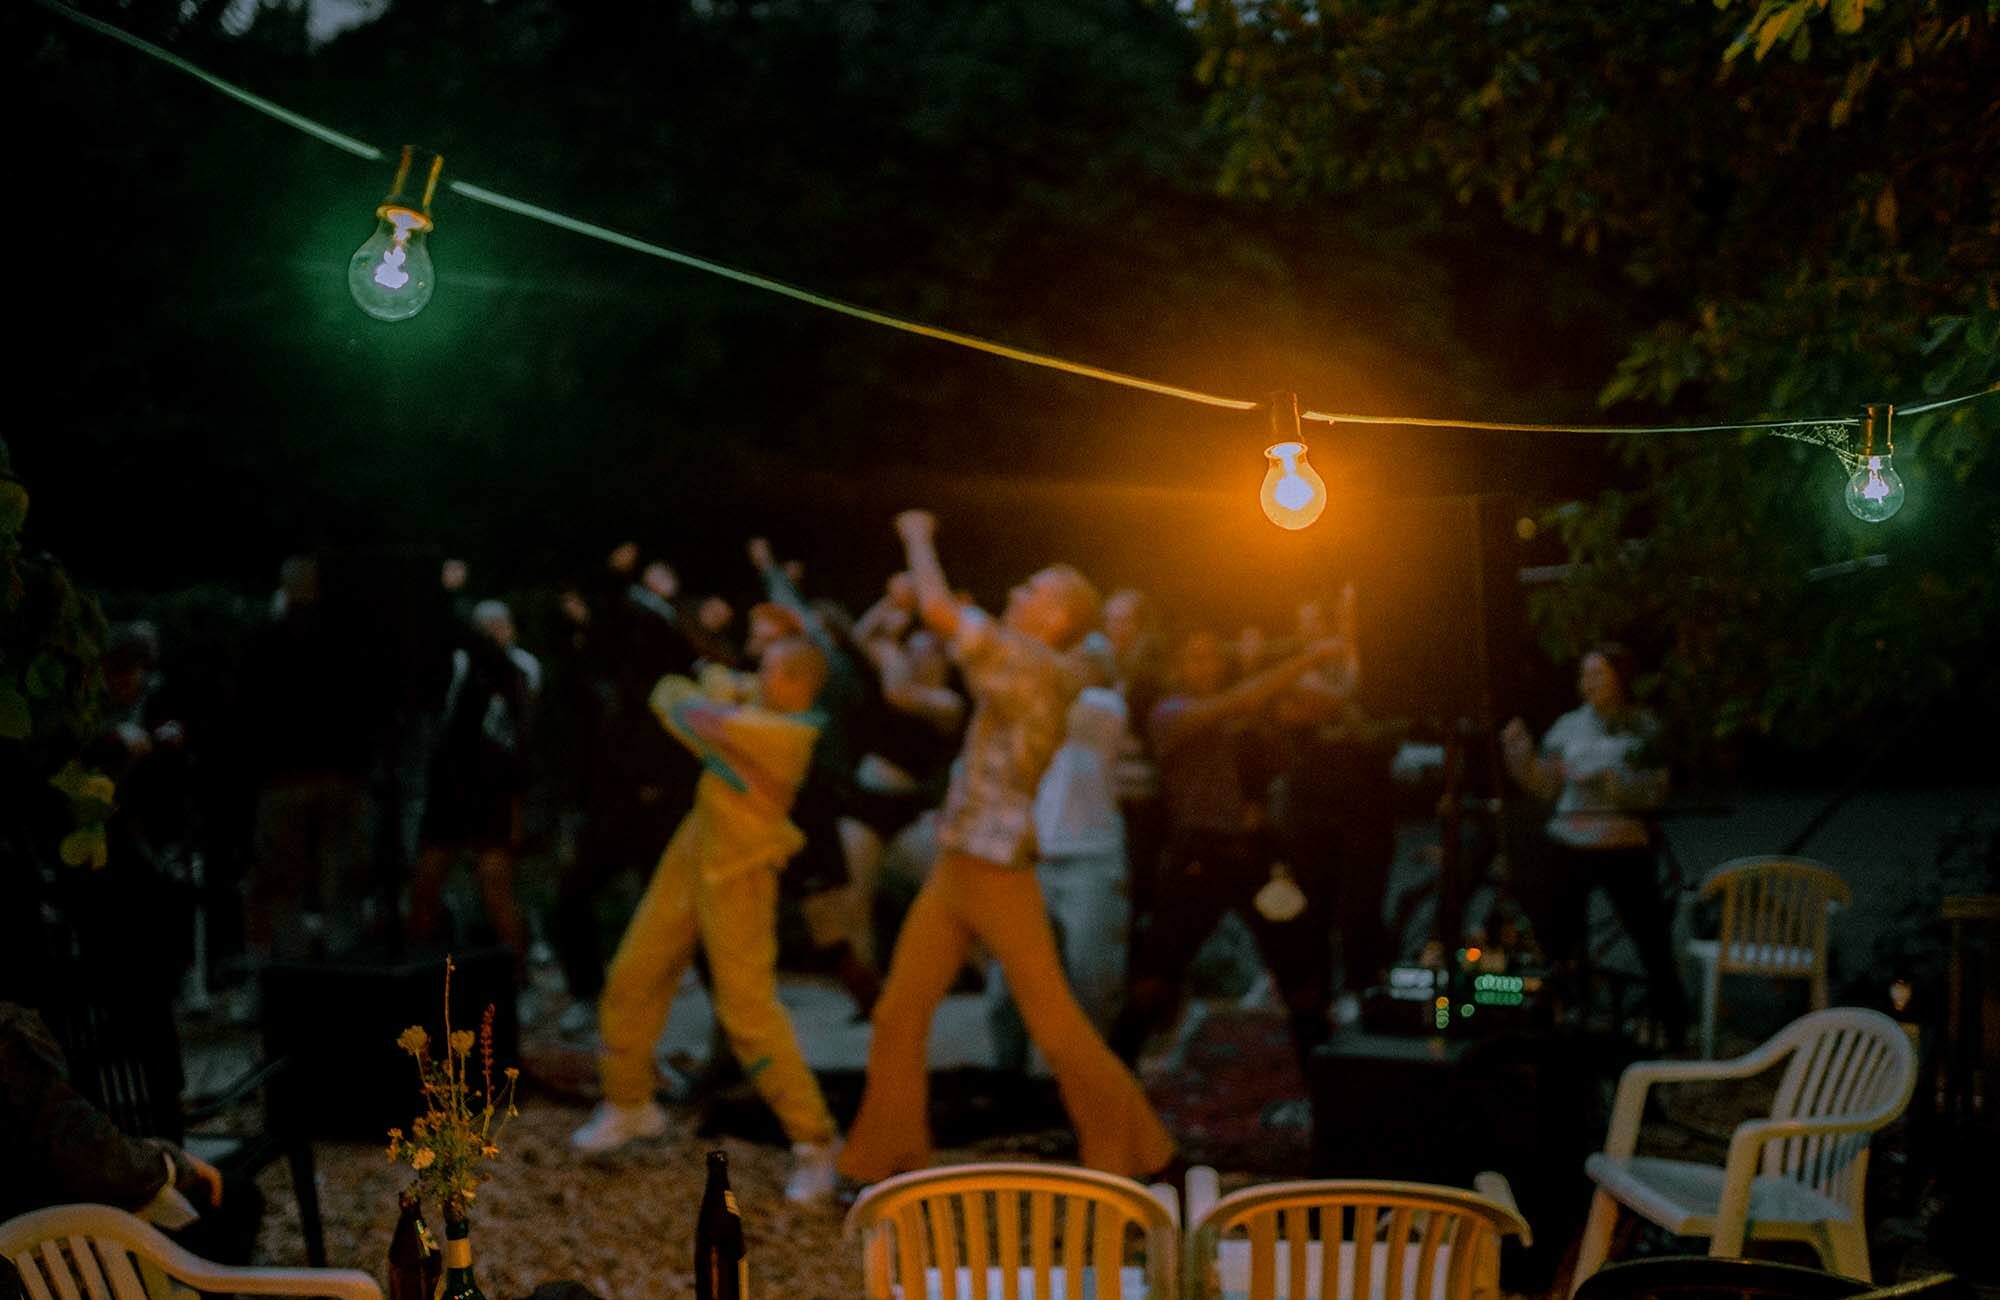 Lichterkette im Vordergrund und Menschen tanzen